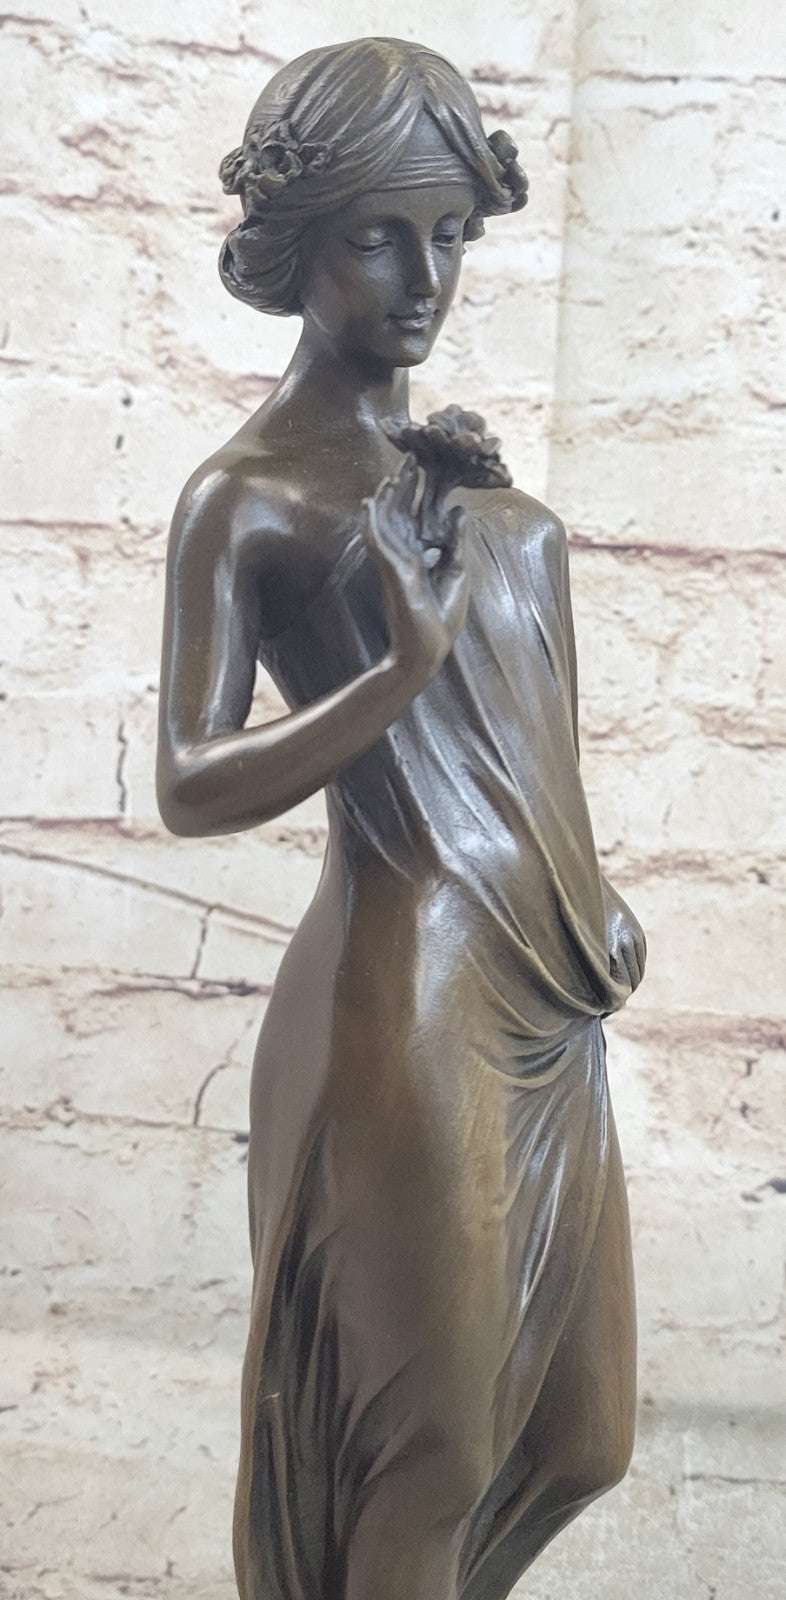 Uique Hot Cast Nude Mother Nature Bronze Sculpture Figure Statue Figurine Art